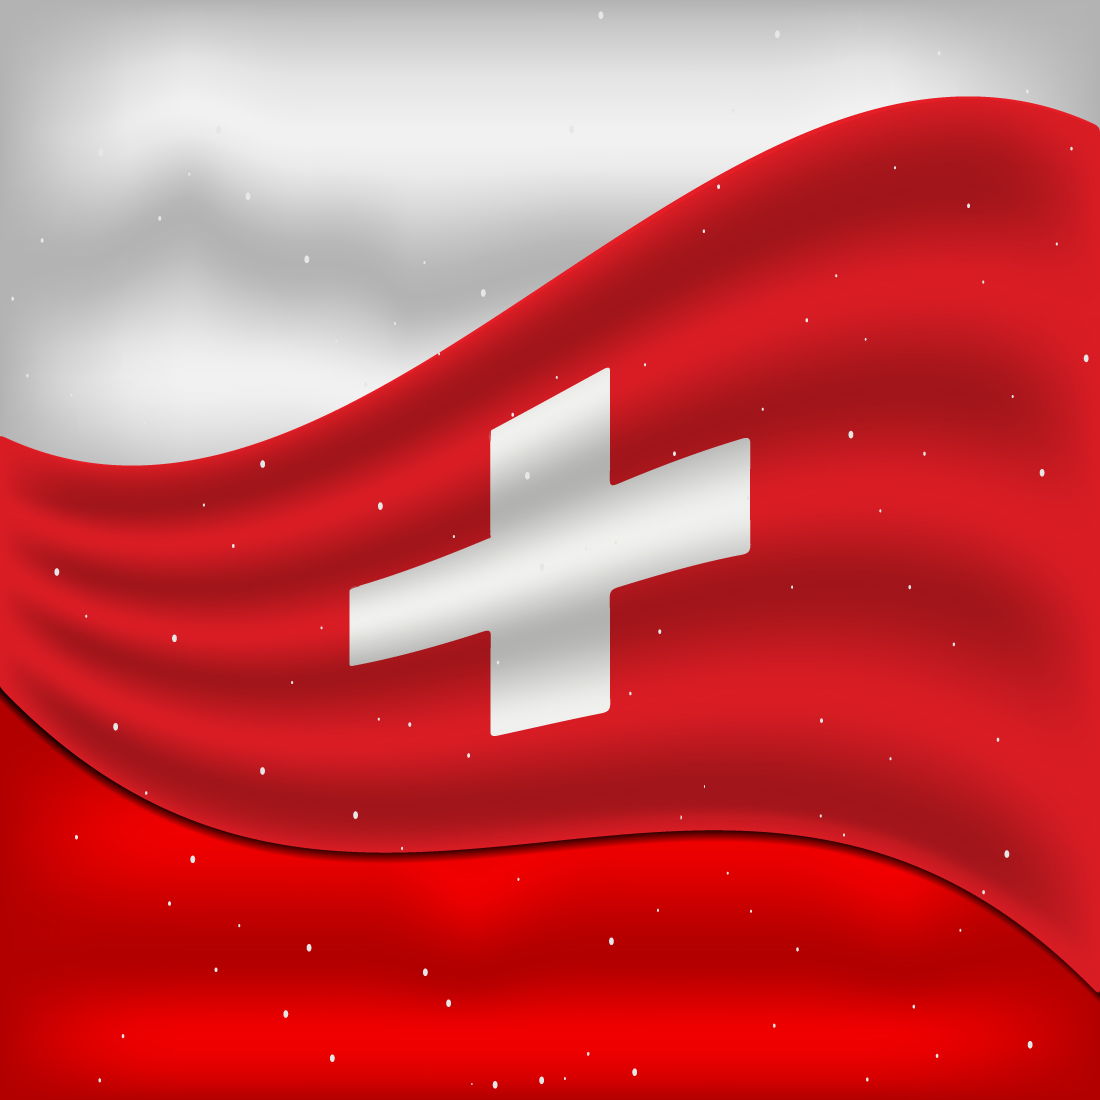 Wonderful image of the flag of Switzerland.